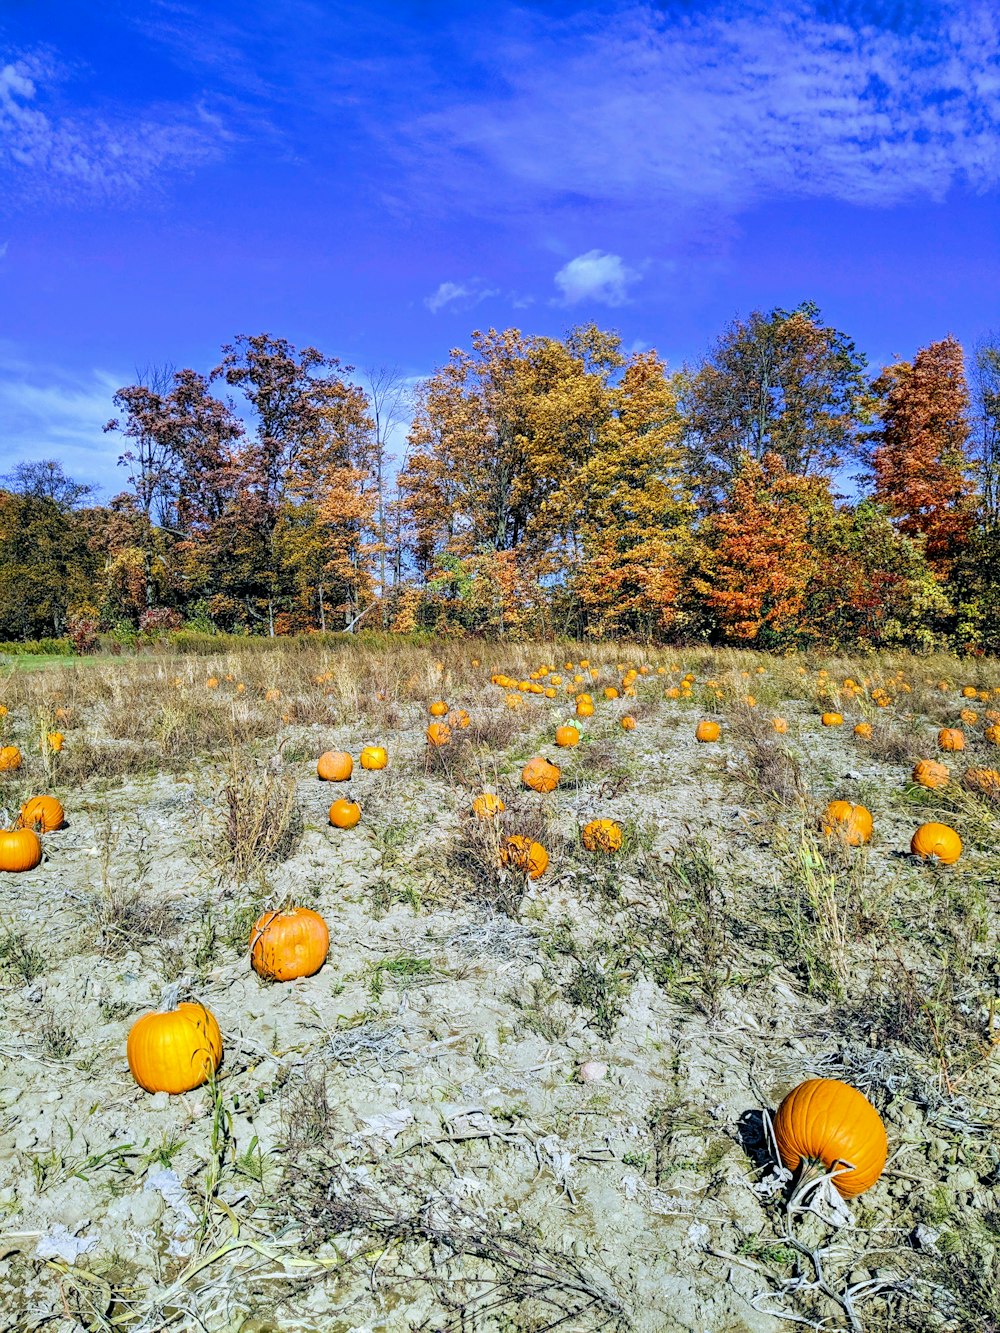 orange pumpkins on green grass field during daytime